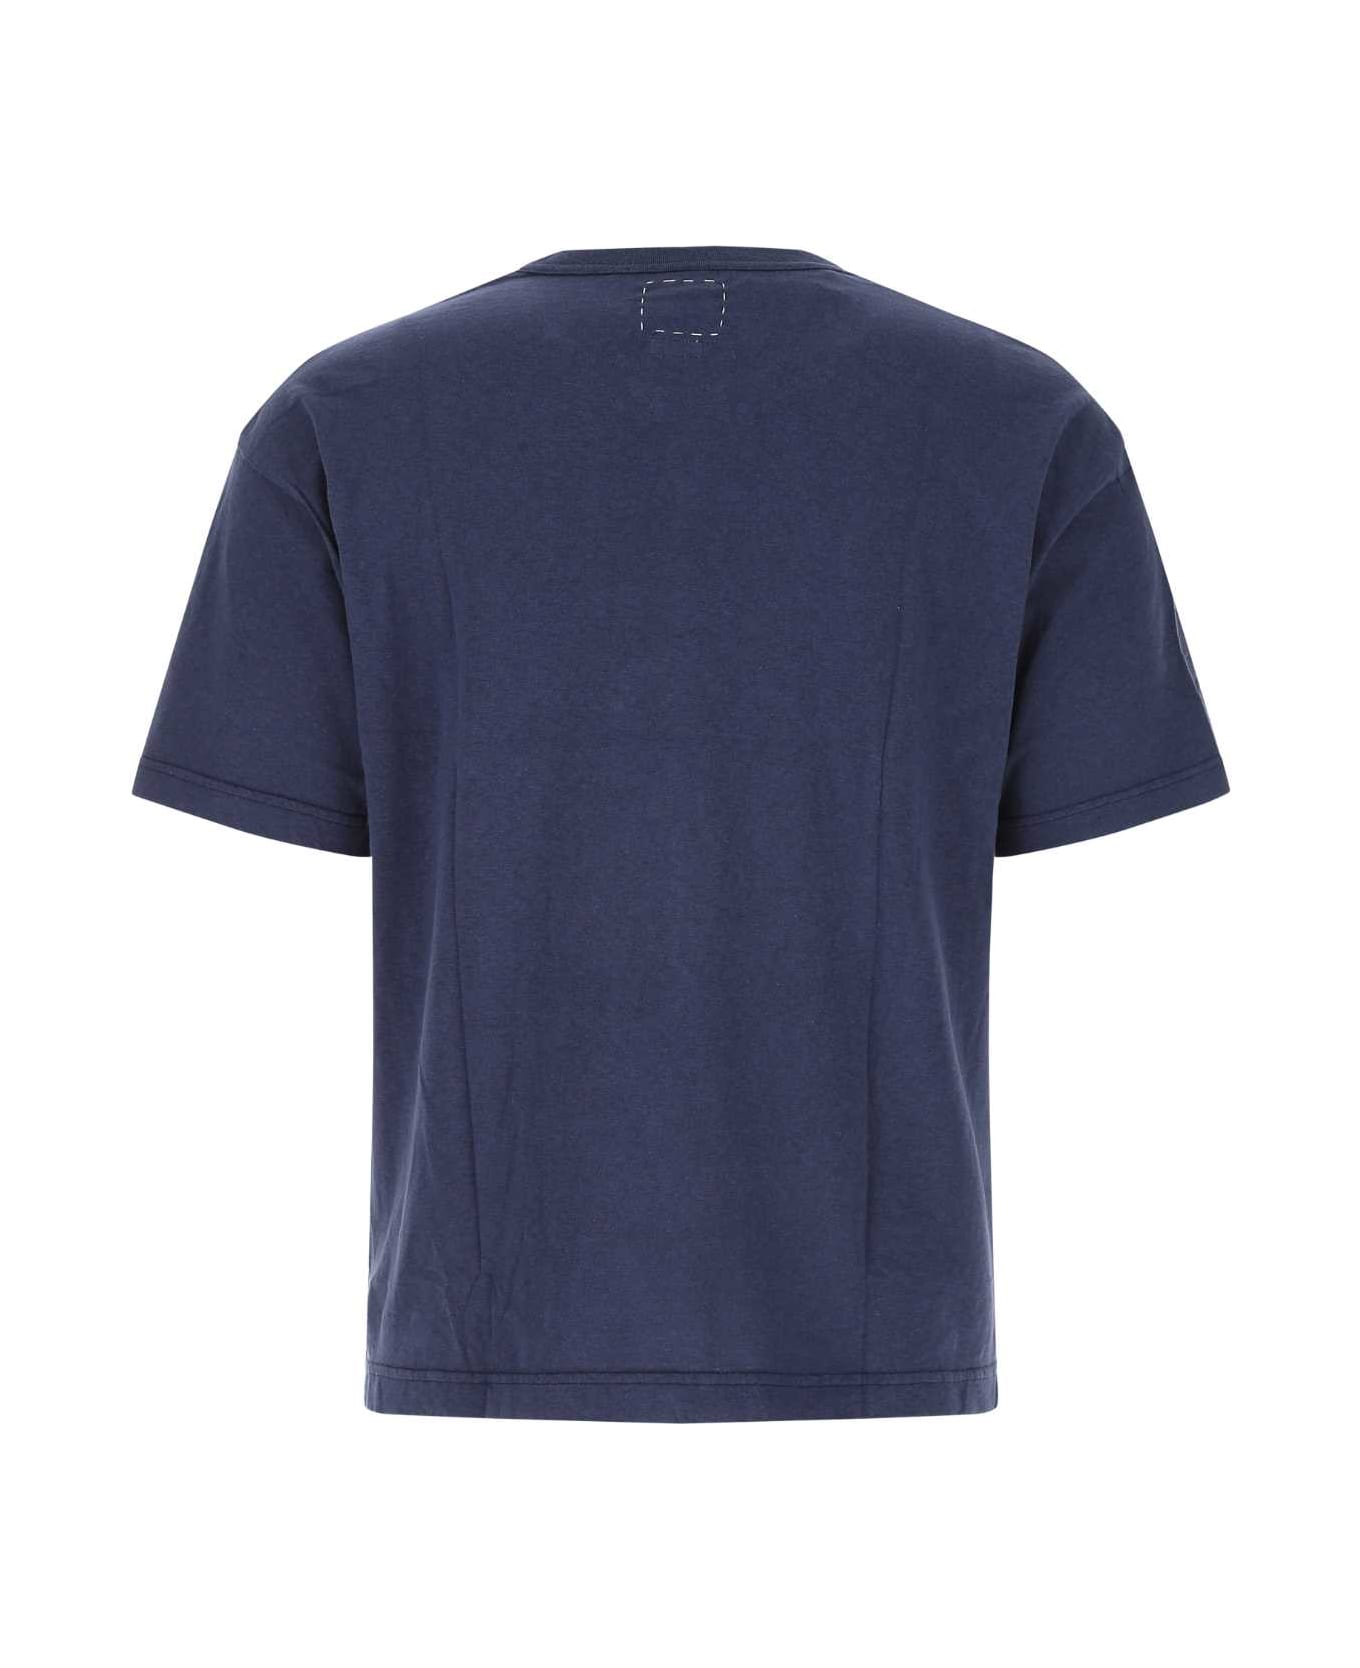 Visvim Blue Cotton Alumni T-shirt - NAVY